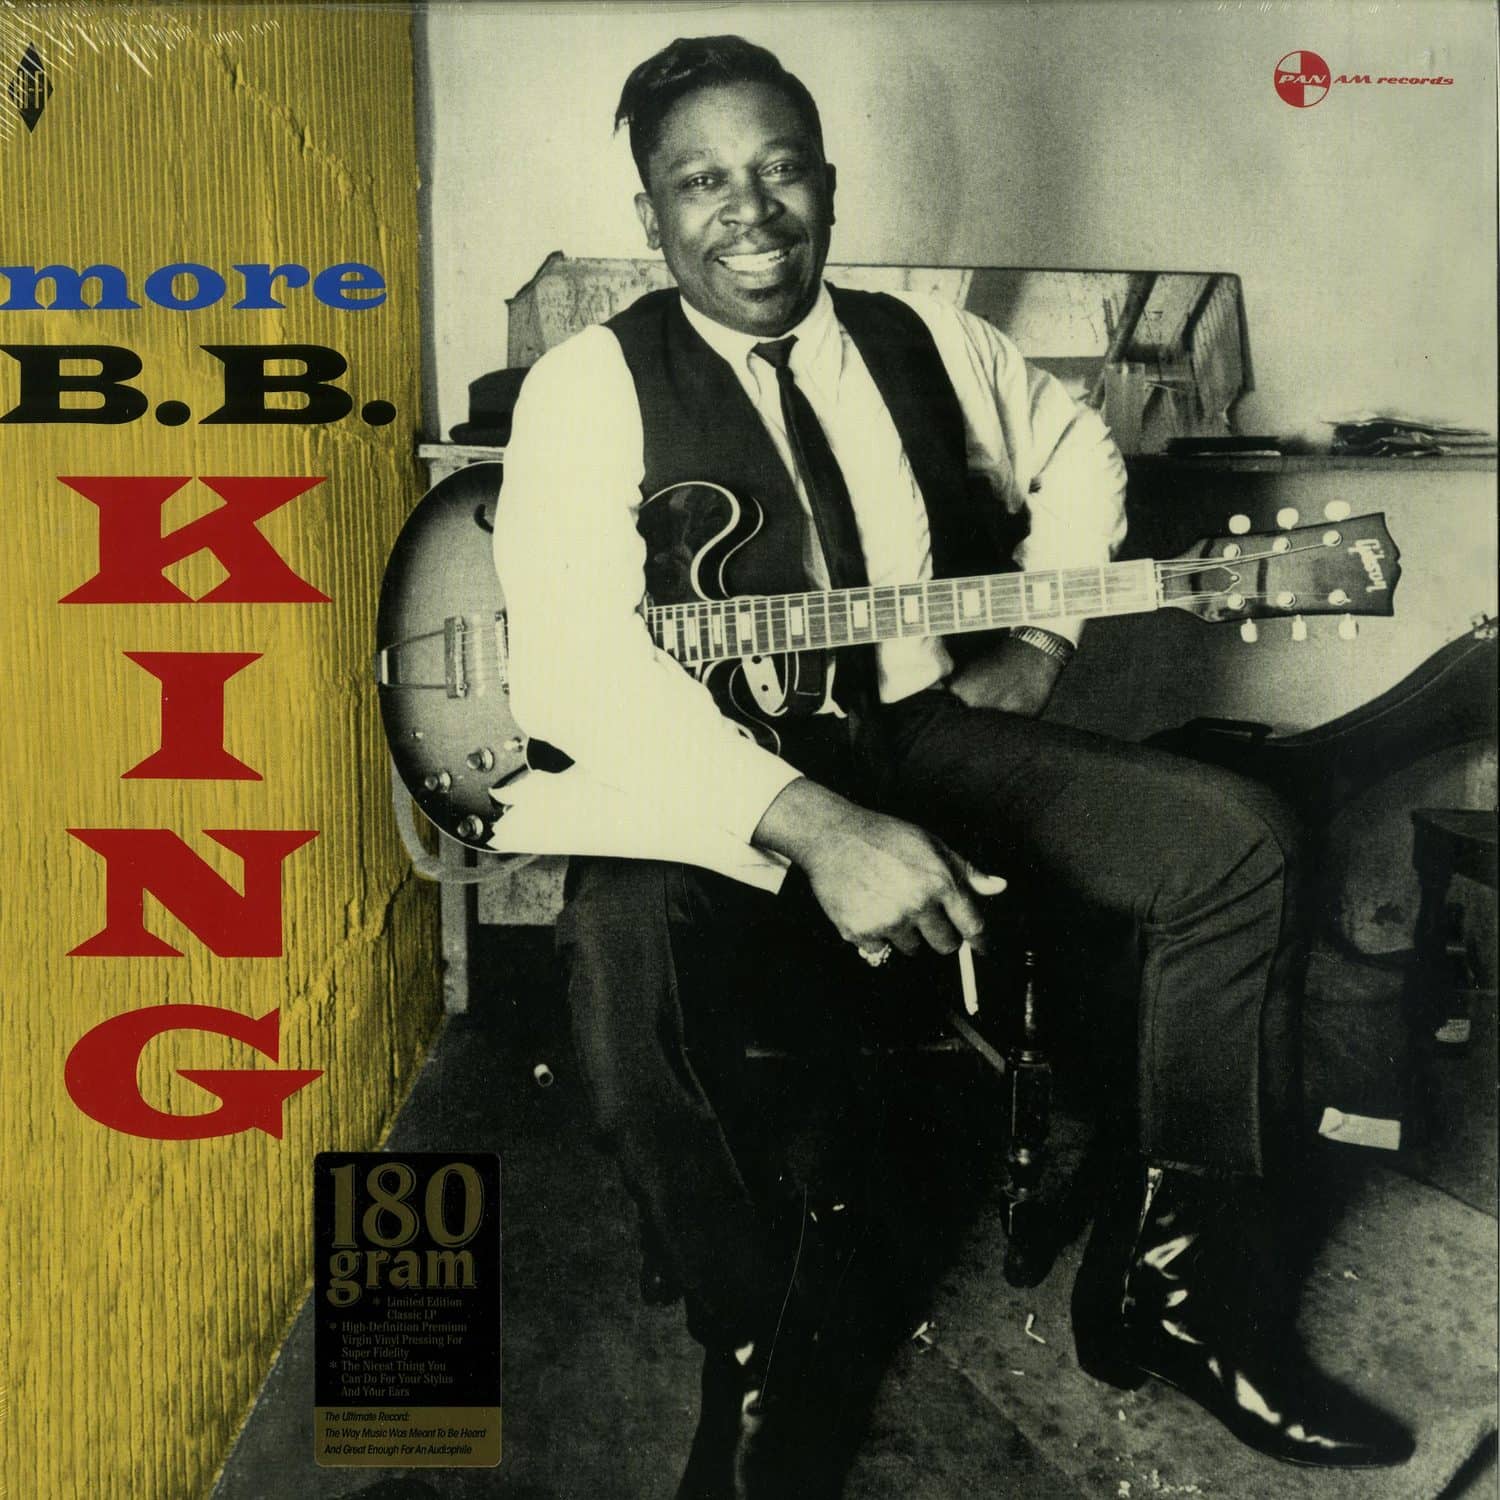 B.B. King - MORE B.B. KING 